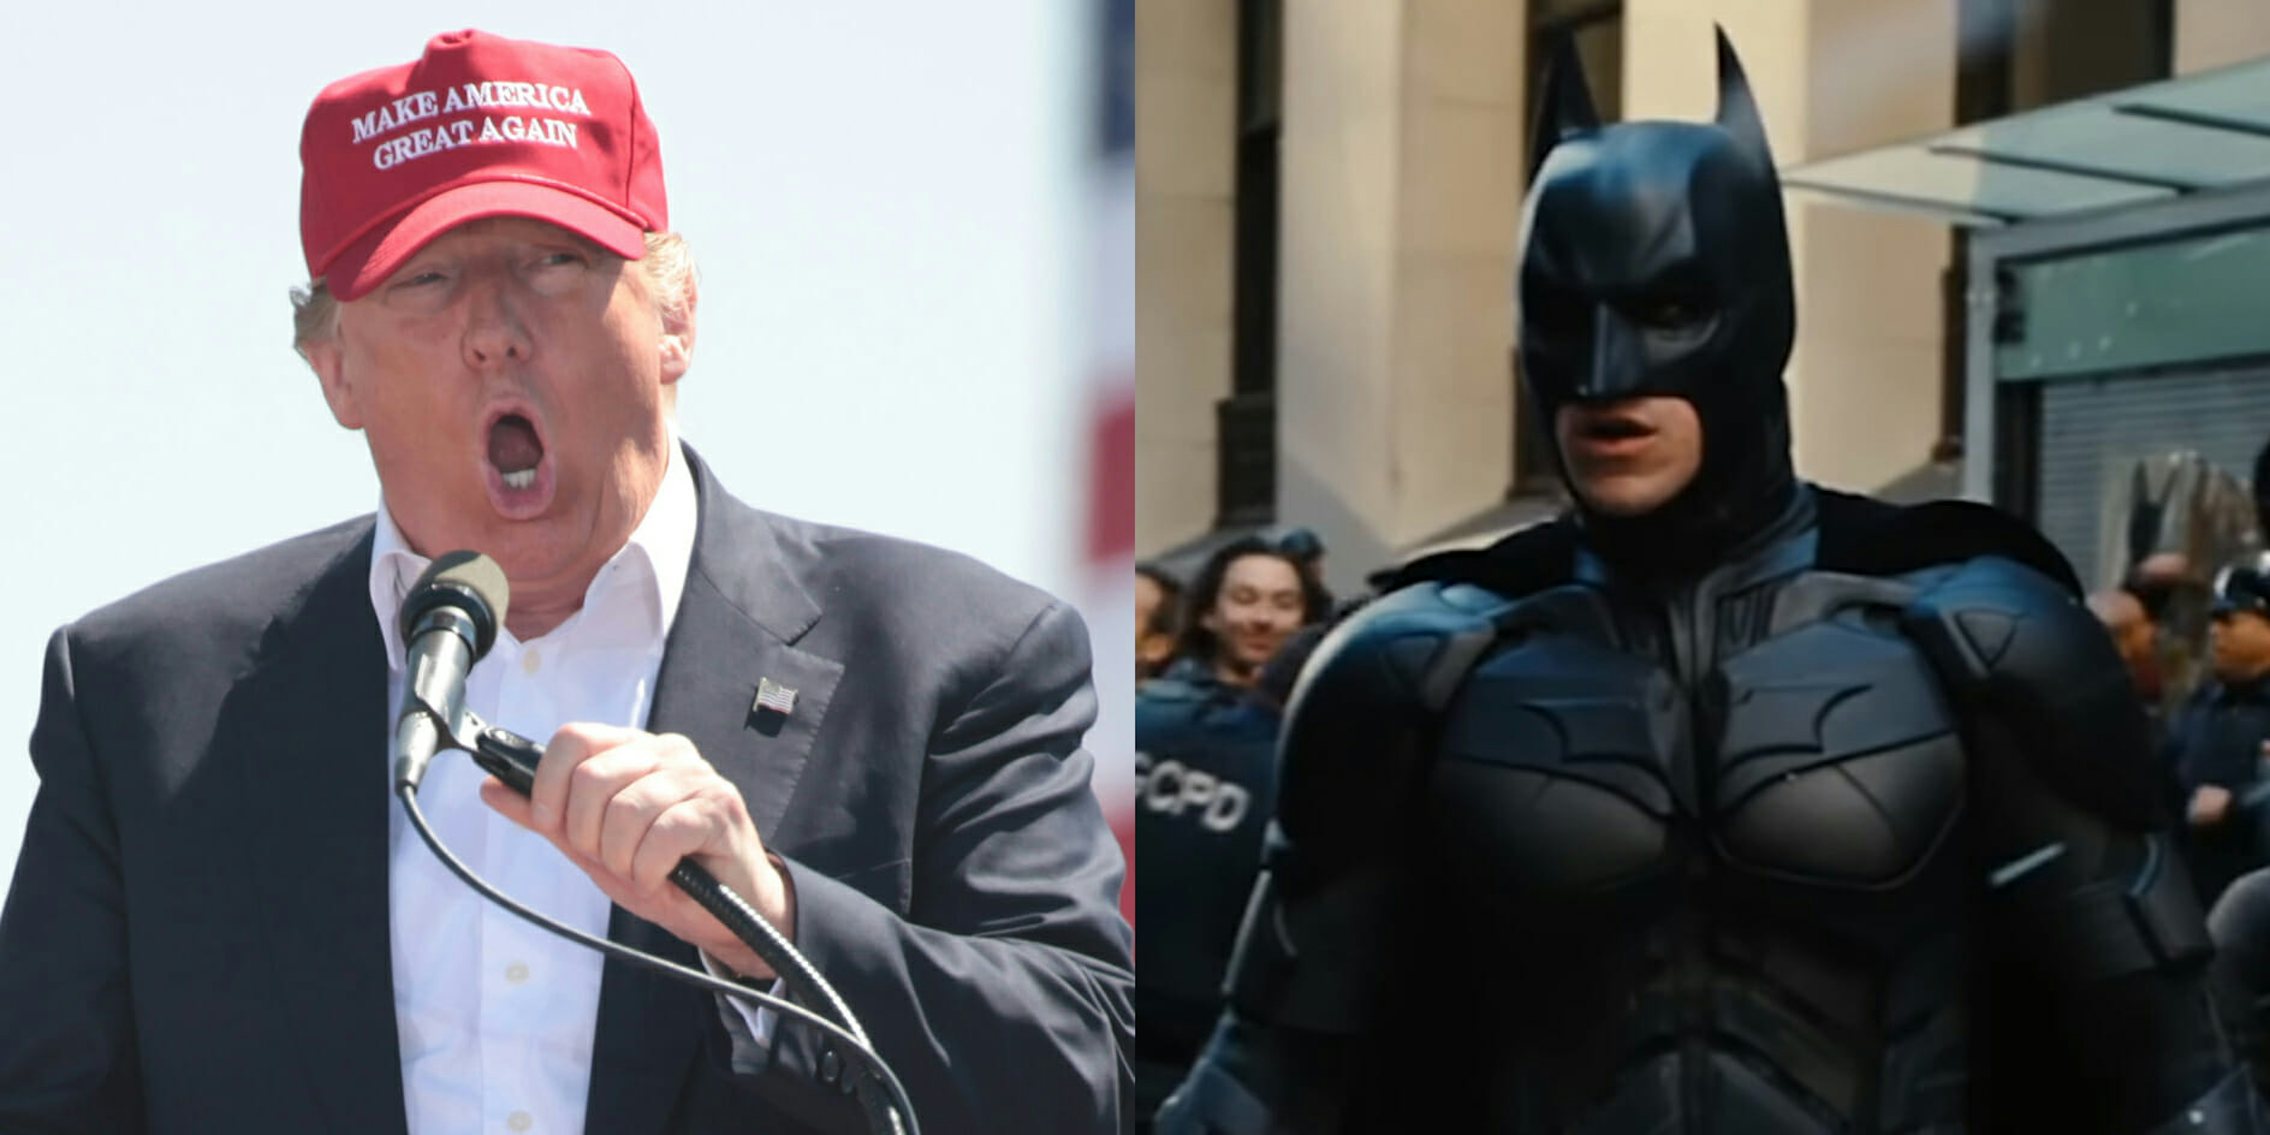 Trump Batman Dark Knight Rises Video Taken Down